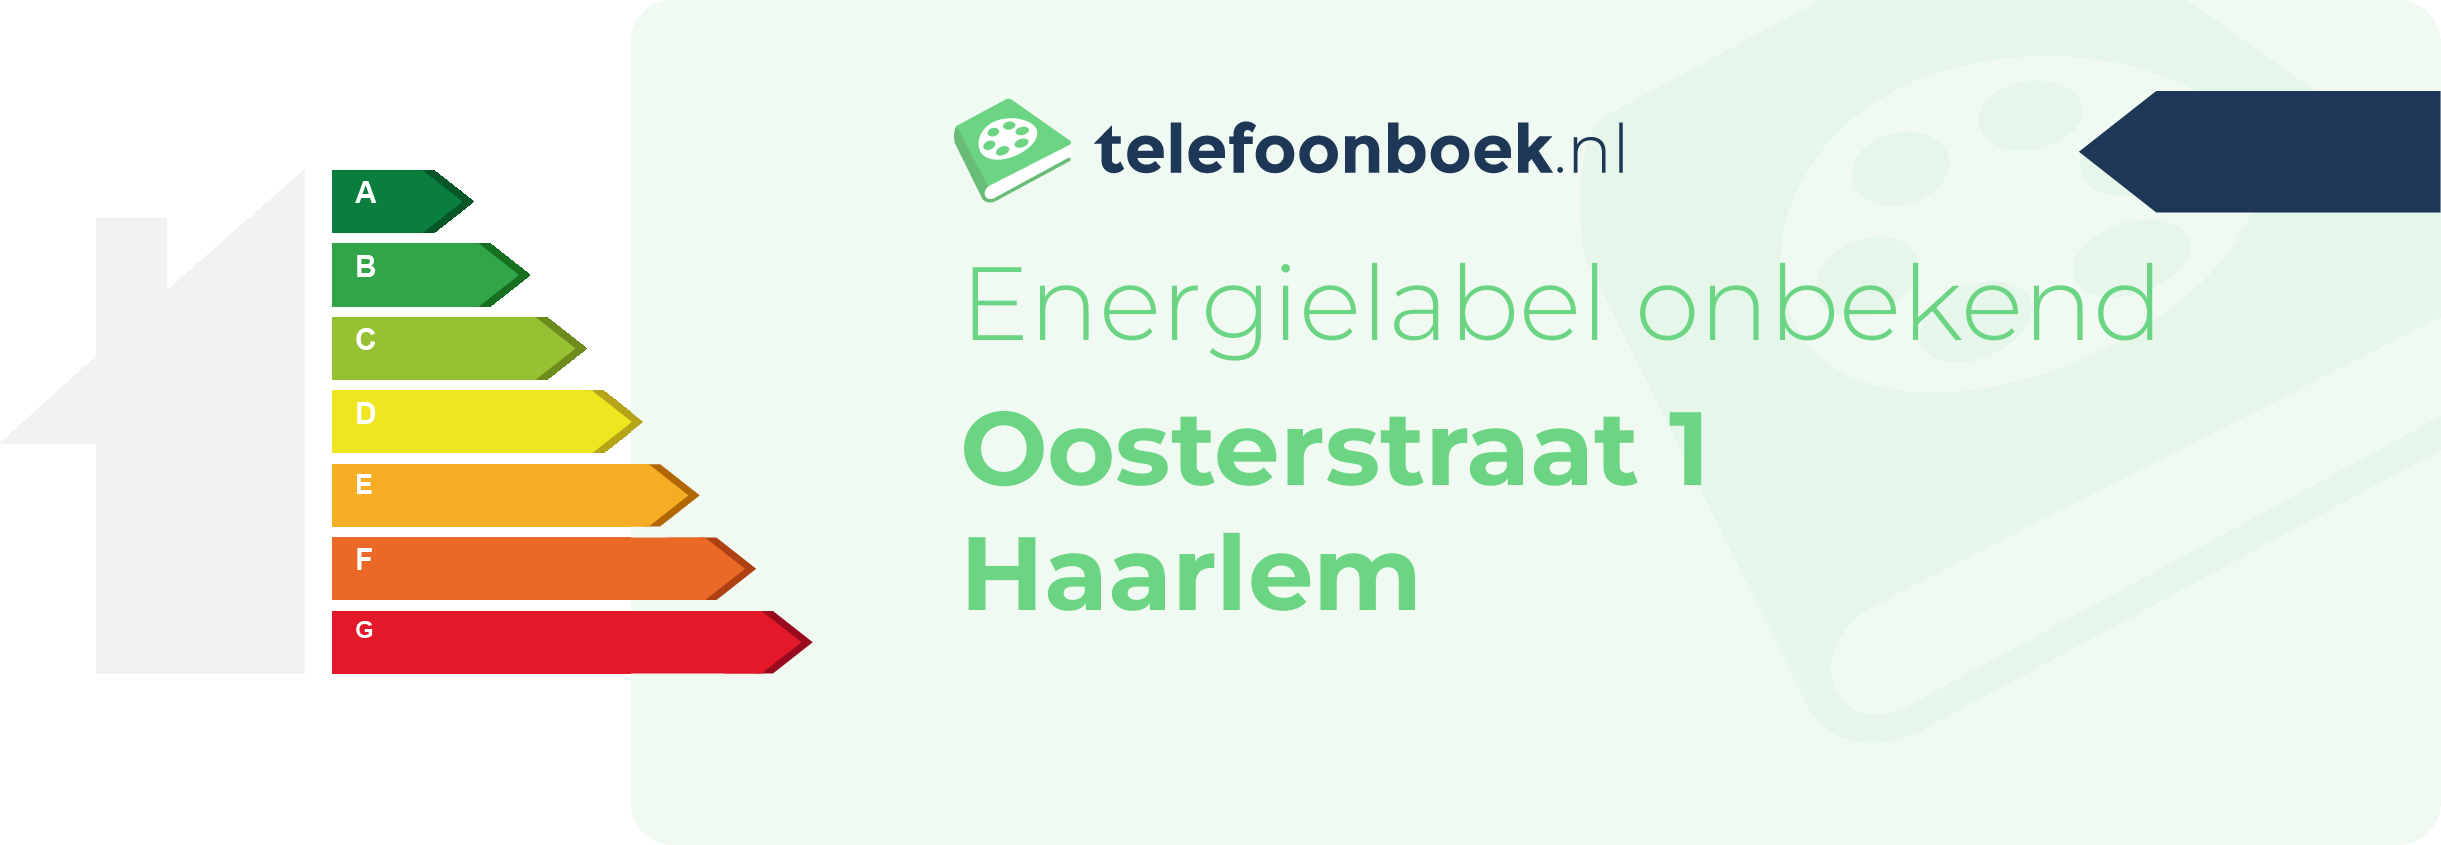 Energielabel Oosterstraat 1 Haarlem